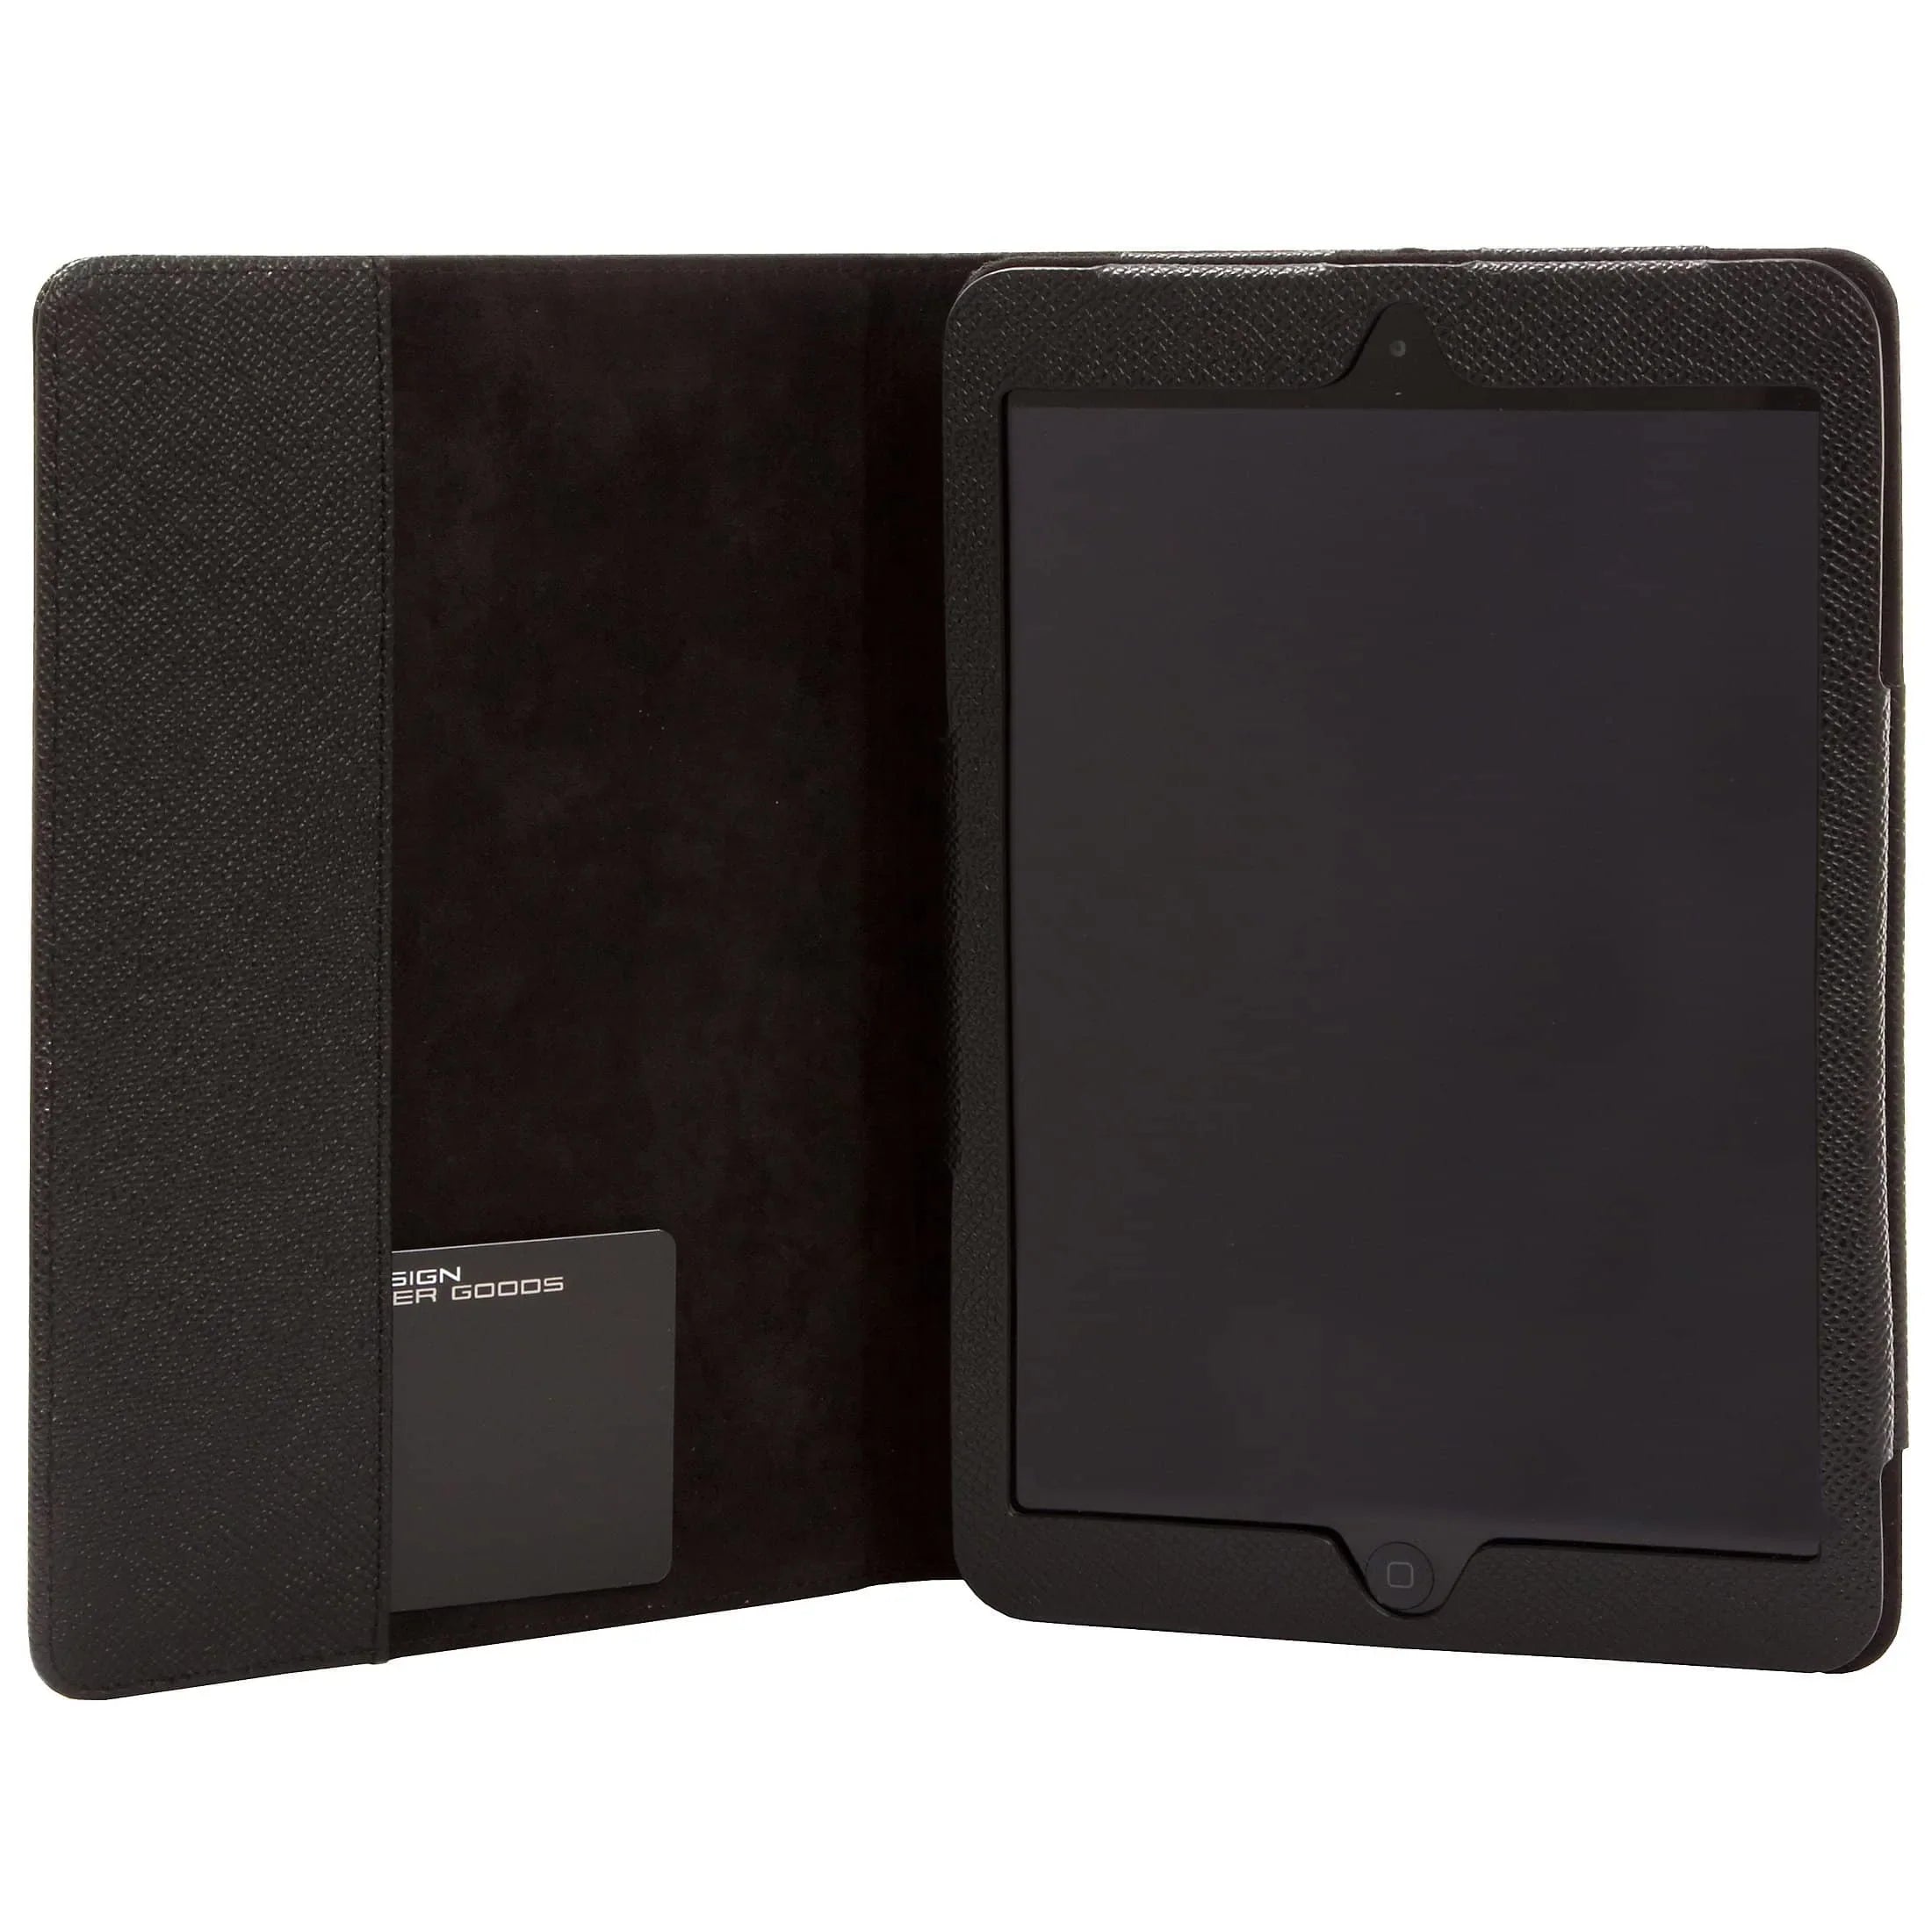 Porsche Design French Classic 3.0 iPad mini Case 1 21 cm - black